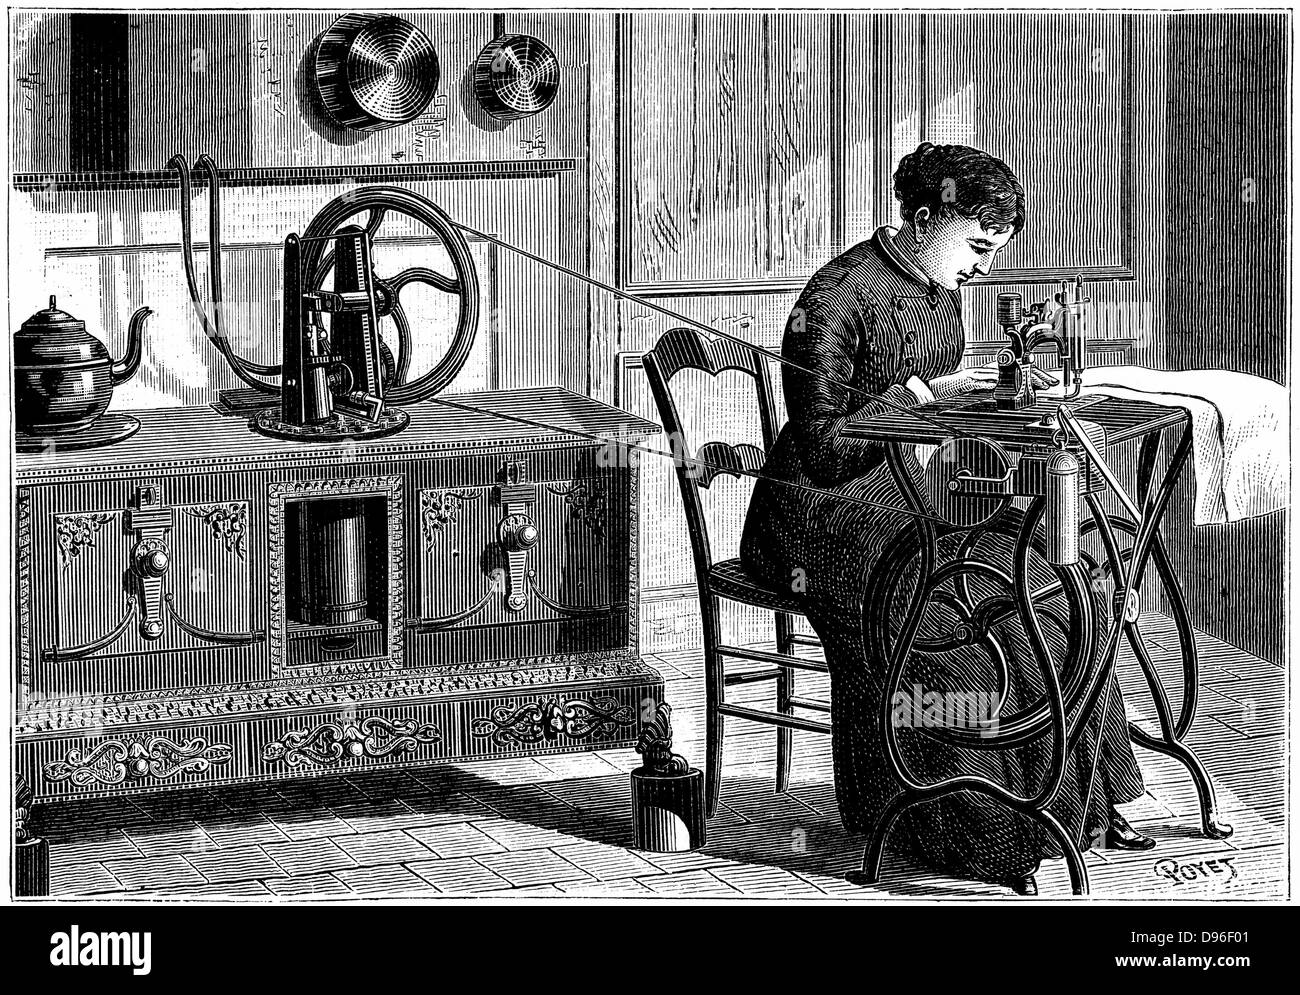 Daussin del motor de vapor, se calientan en el horno de la cocina, que se utiliza para alimentar una máquina de coser. Grabado publicado en París, 1883 Foto de stock